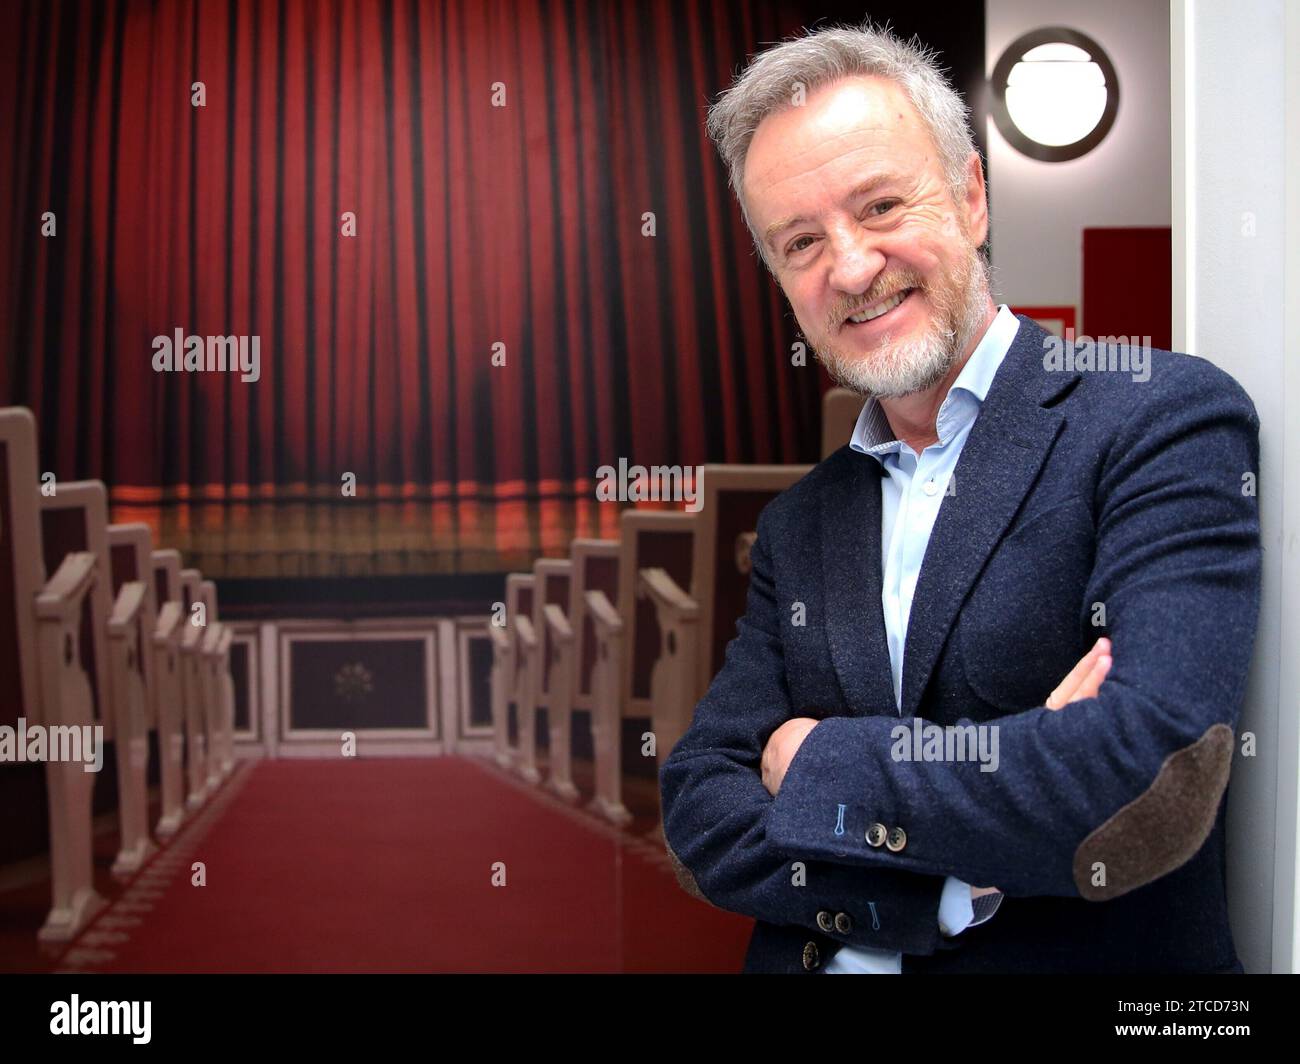 Madrid, 13.06.2018. Interview mit dem Schauspieler Carlos Hipólito. Foto: Ernesto Akut Archdc. Quelle: Album/Archivo ABC/Ernesto Agudo Stockfoto